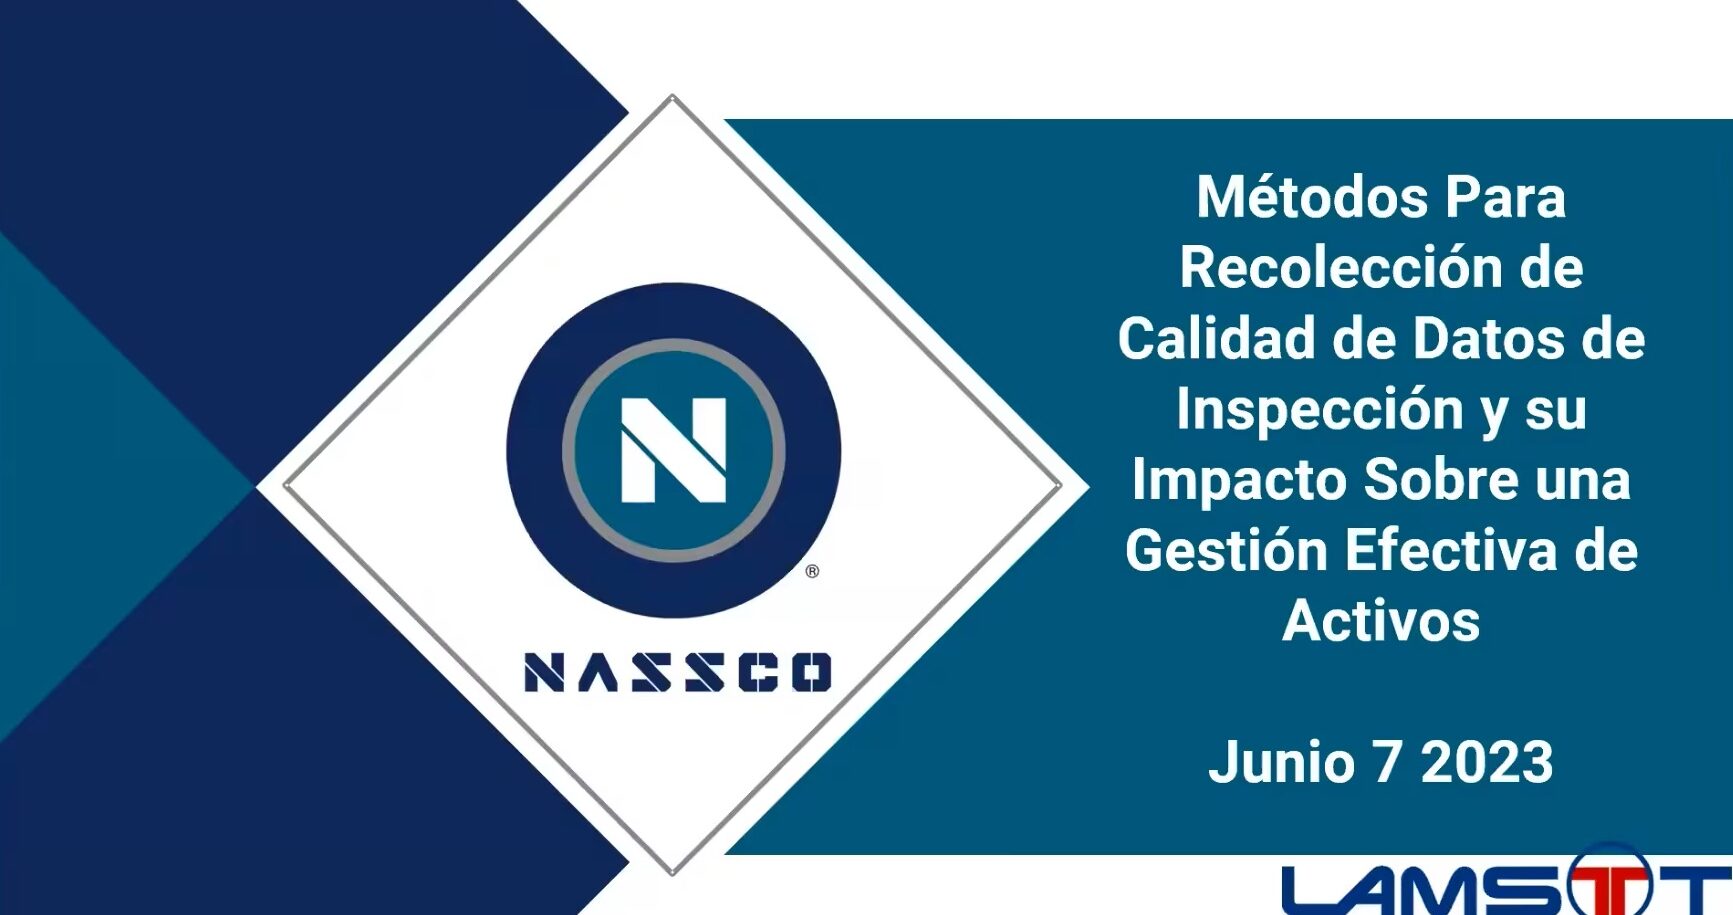 NASSCO’s Metodos Para Recoleccion de Calidad de Datos de Inspeccion y su Impacto Sobre una Gestion Efectiva de Activos